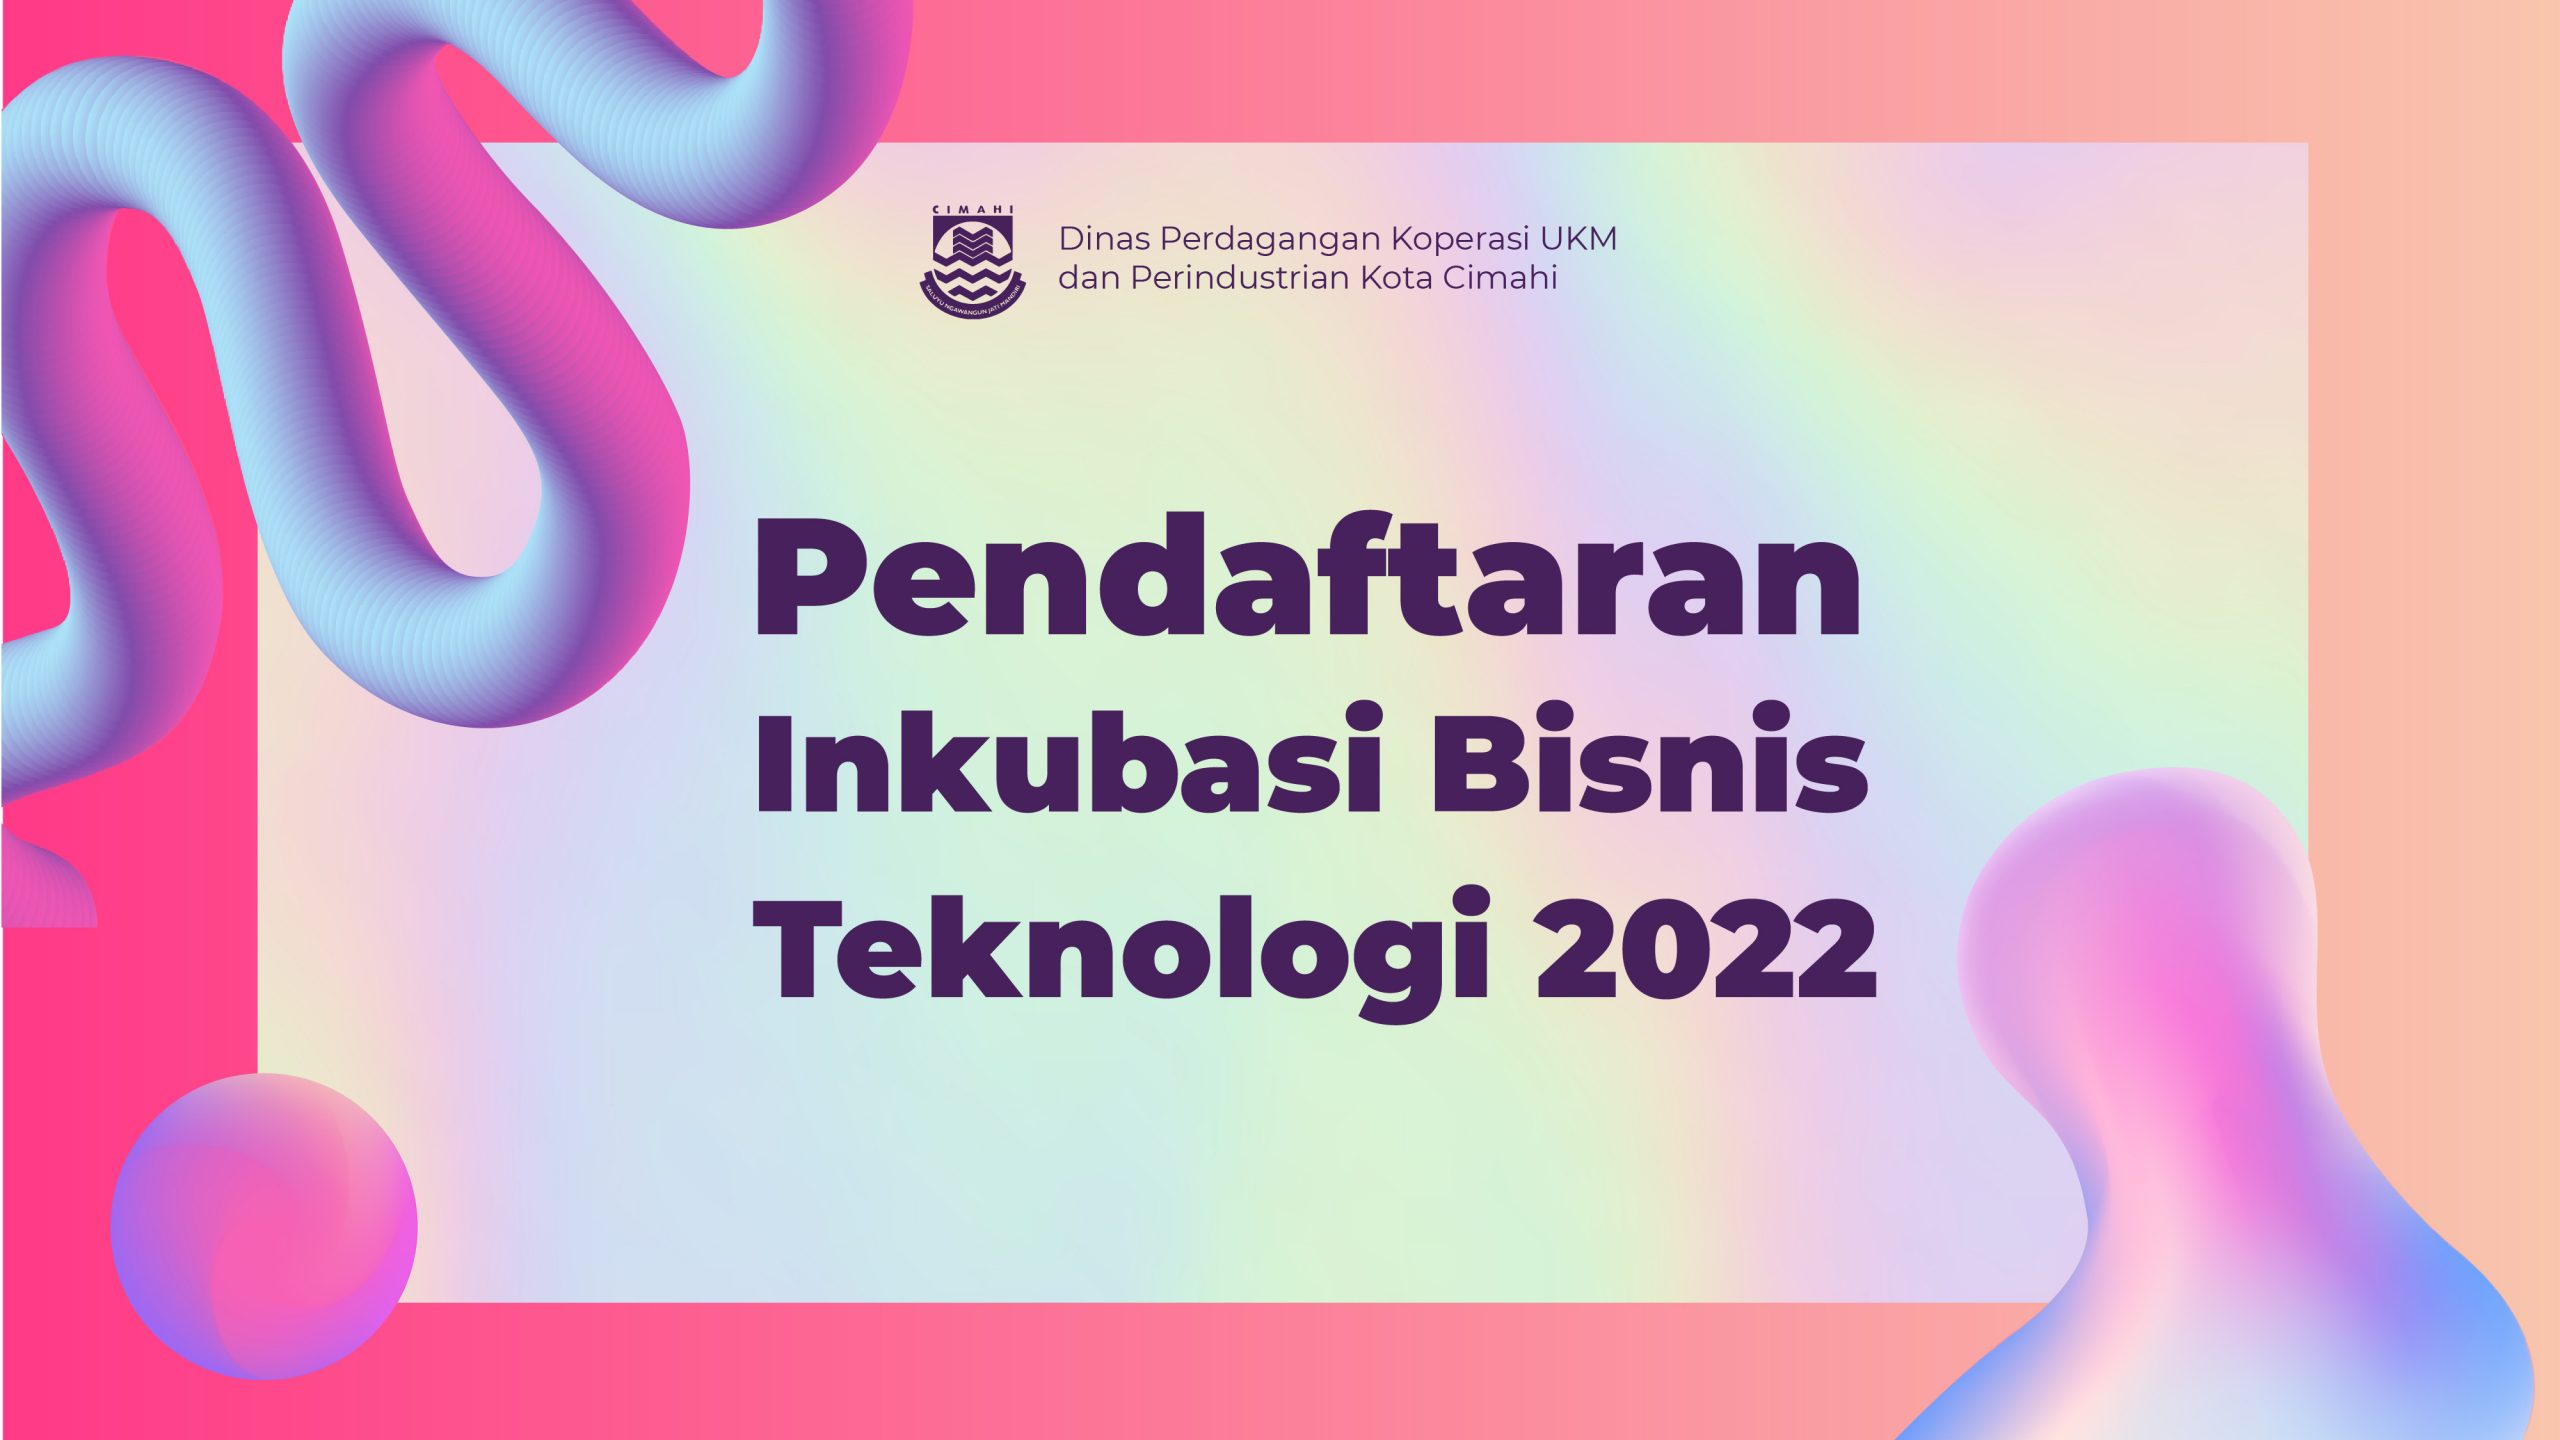 Pendaftaran Inkubasi Bisnis Teknologi 2022